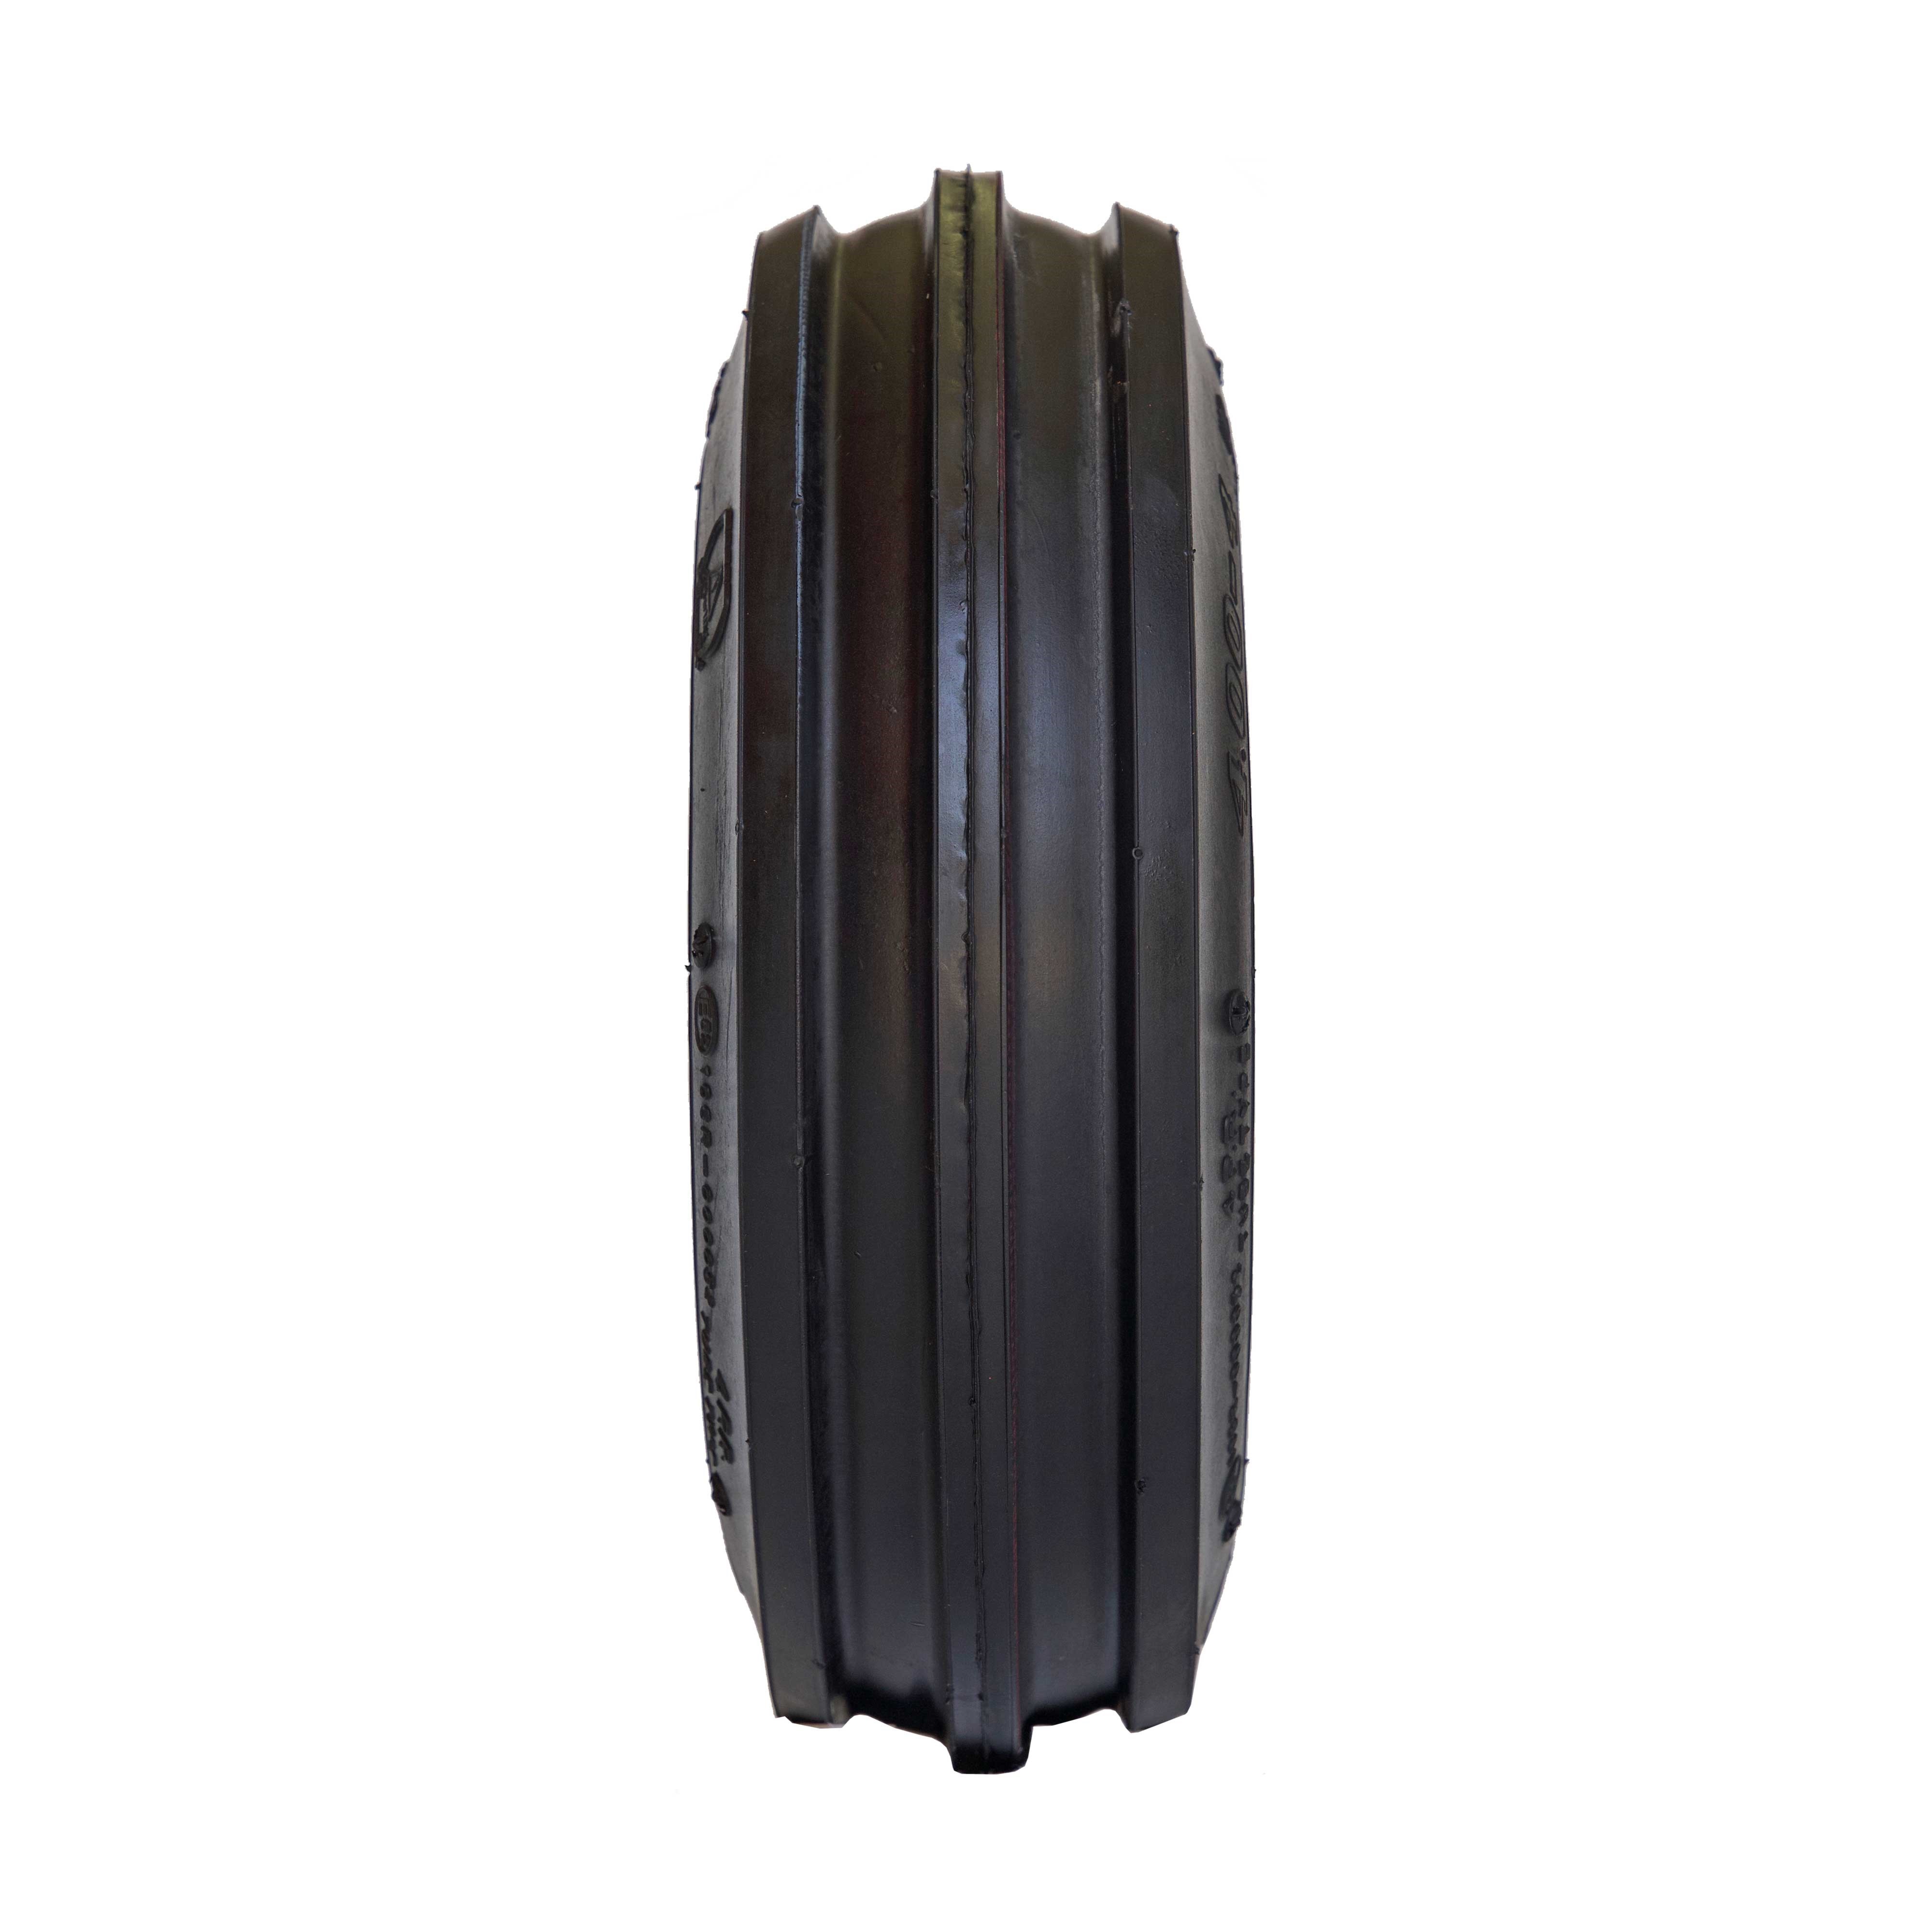 Reifen für Kreissler 3.50-6, 4PR, Deli S-318, 3-Rib